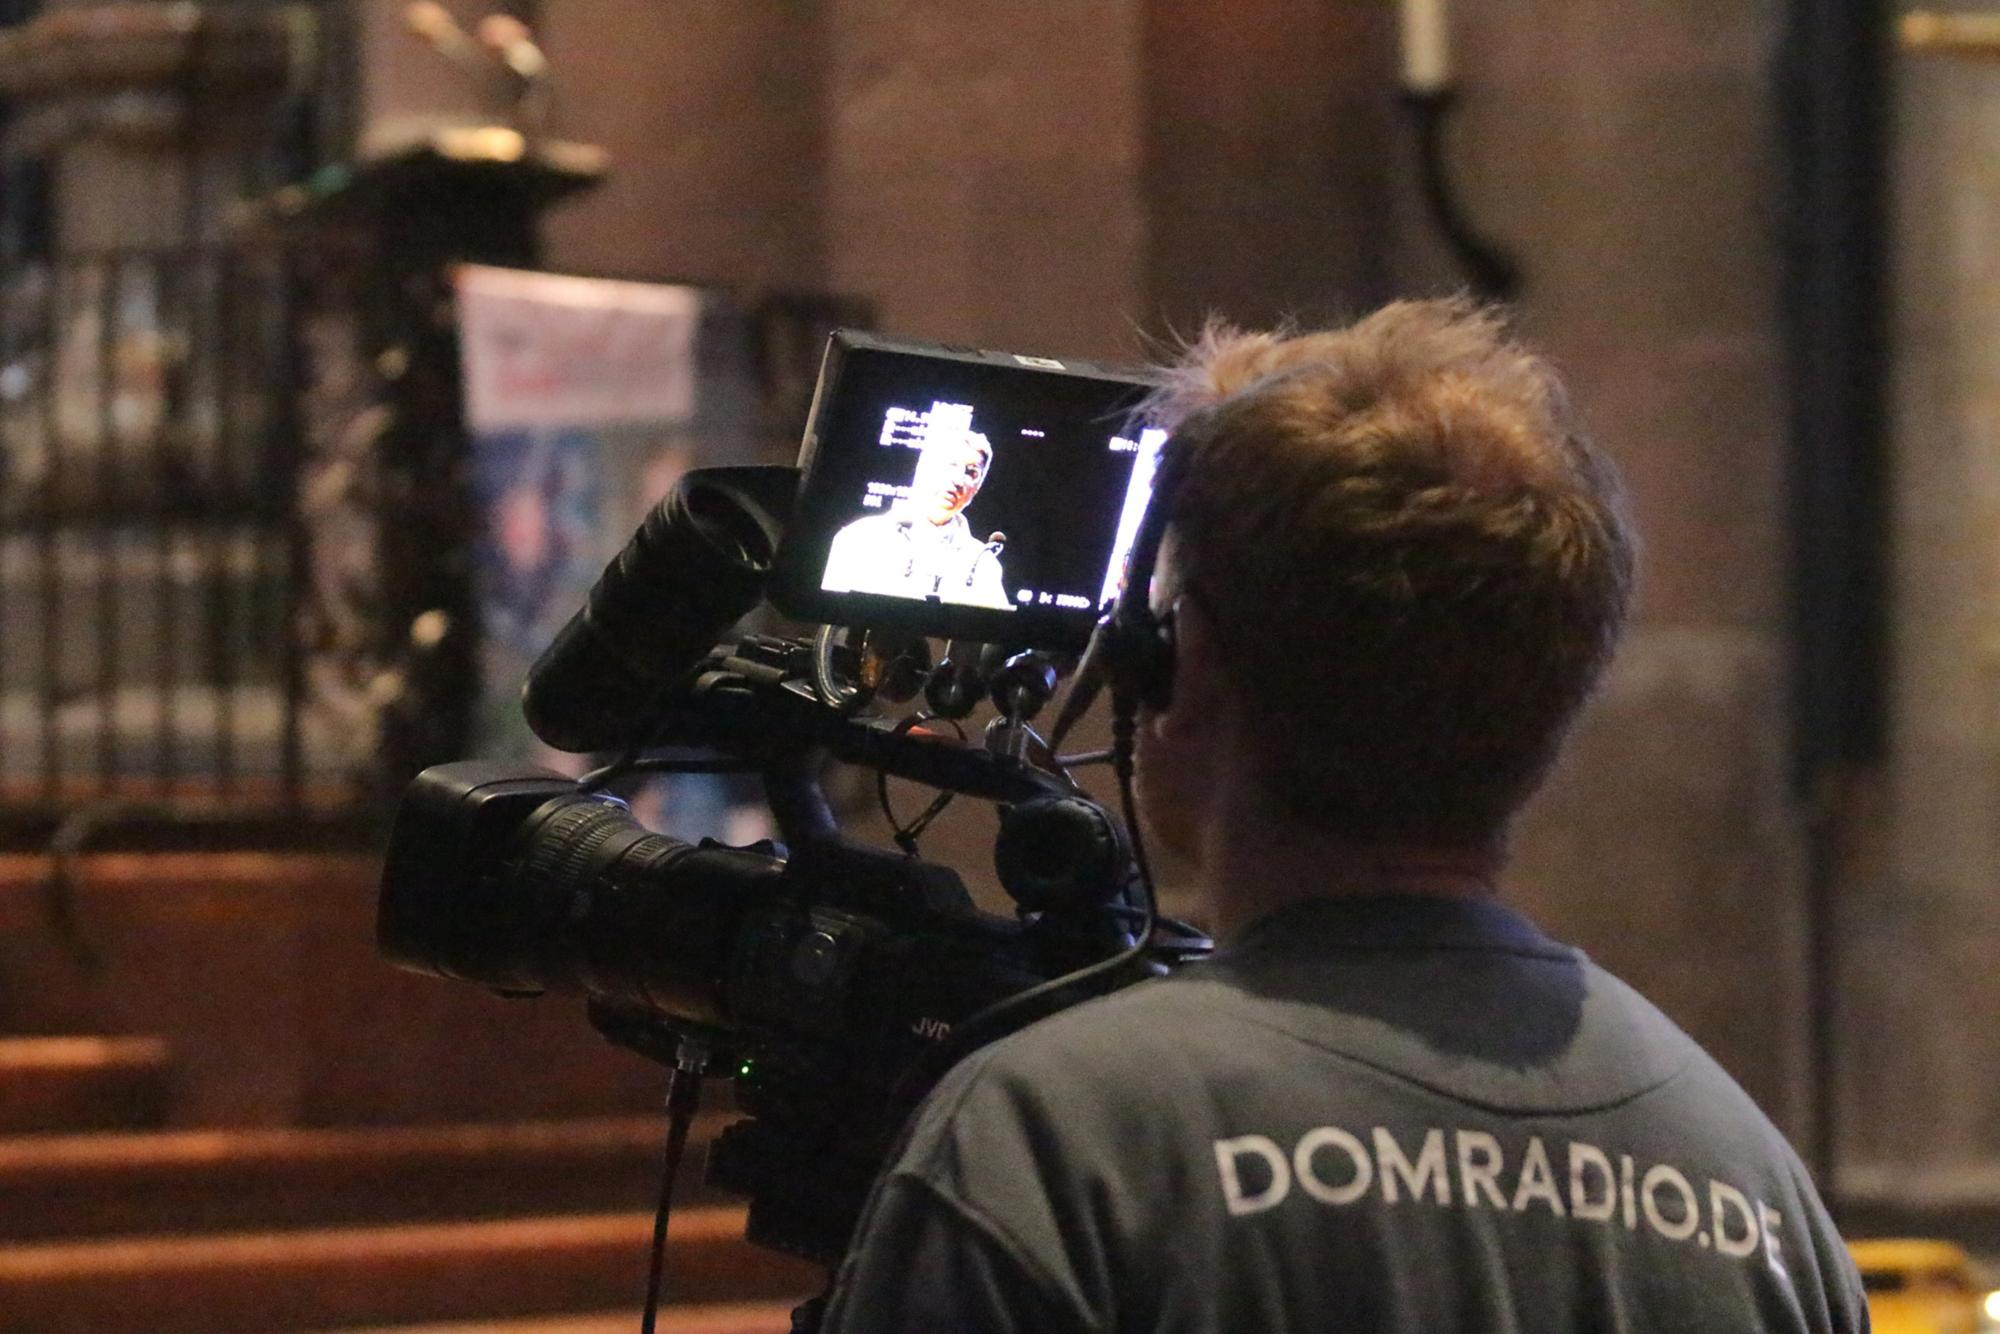 Mainz, 3. November 2019: Der Gottesdienst zur Eröffnung der Solidaritätsaktion des Bonifatiuswerkes wurde vom Domradio live übertragen.